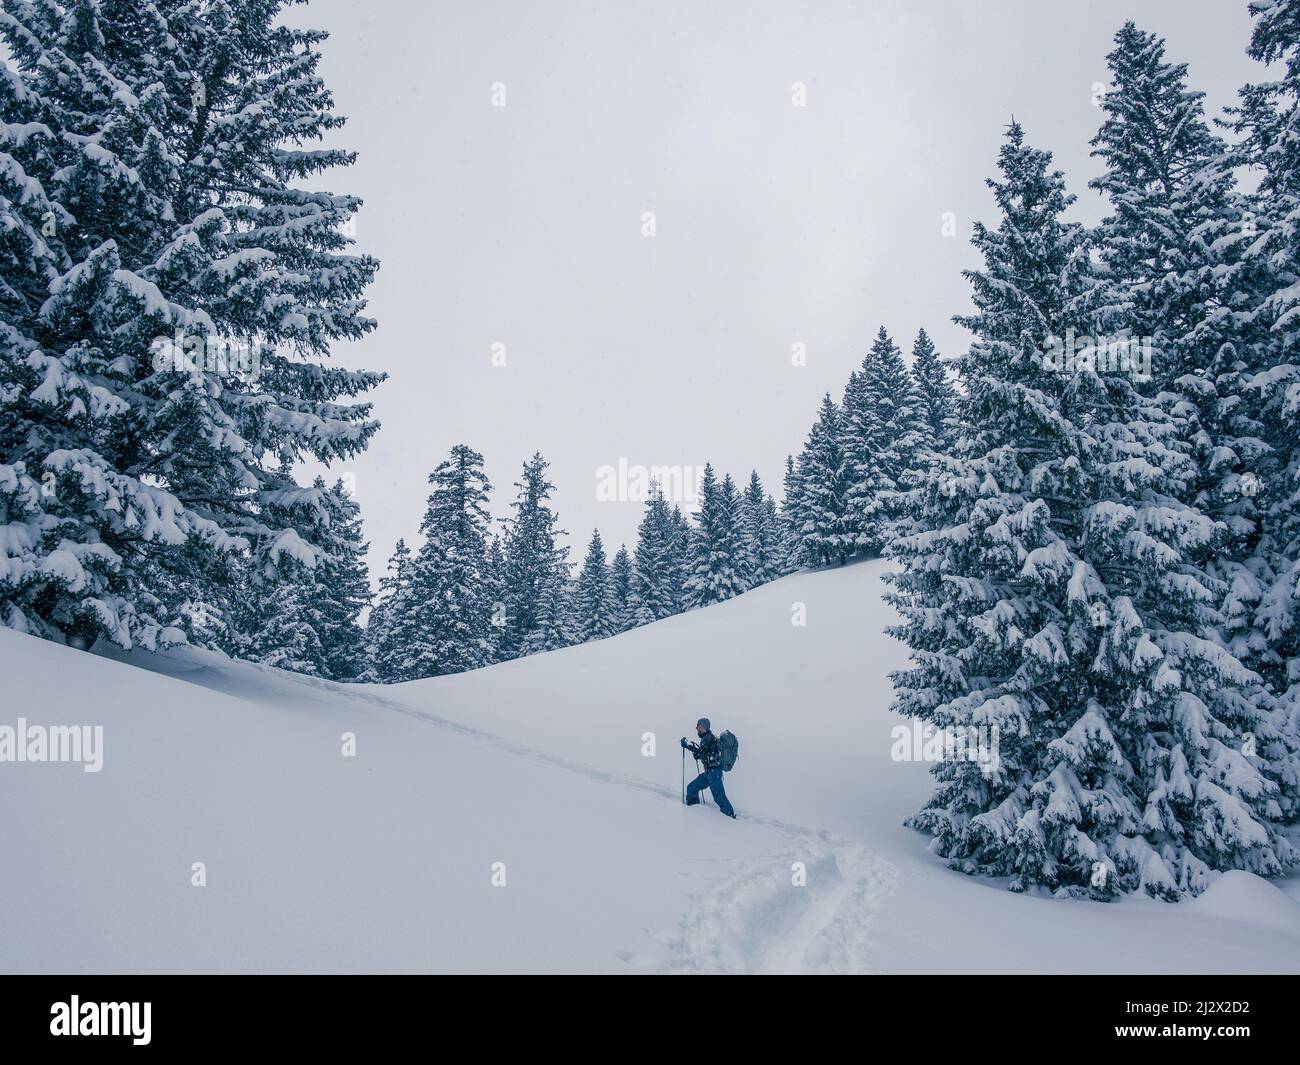 Excursion de ski à la station de Lacherspitze enneigée à Sudelfeld en Bavière, des amateurs de ski dans la neige entre des arbres enneigés Banque D'Images